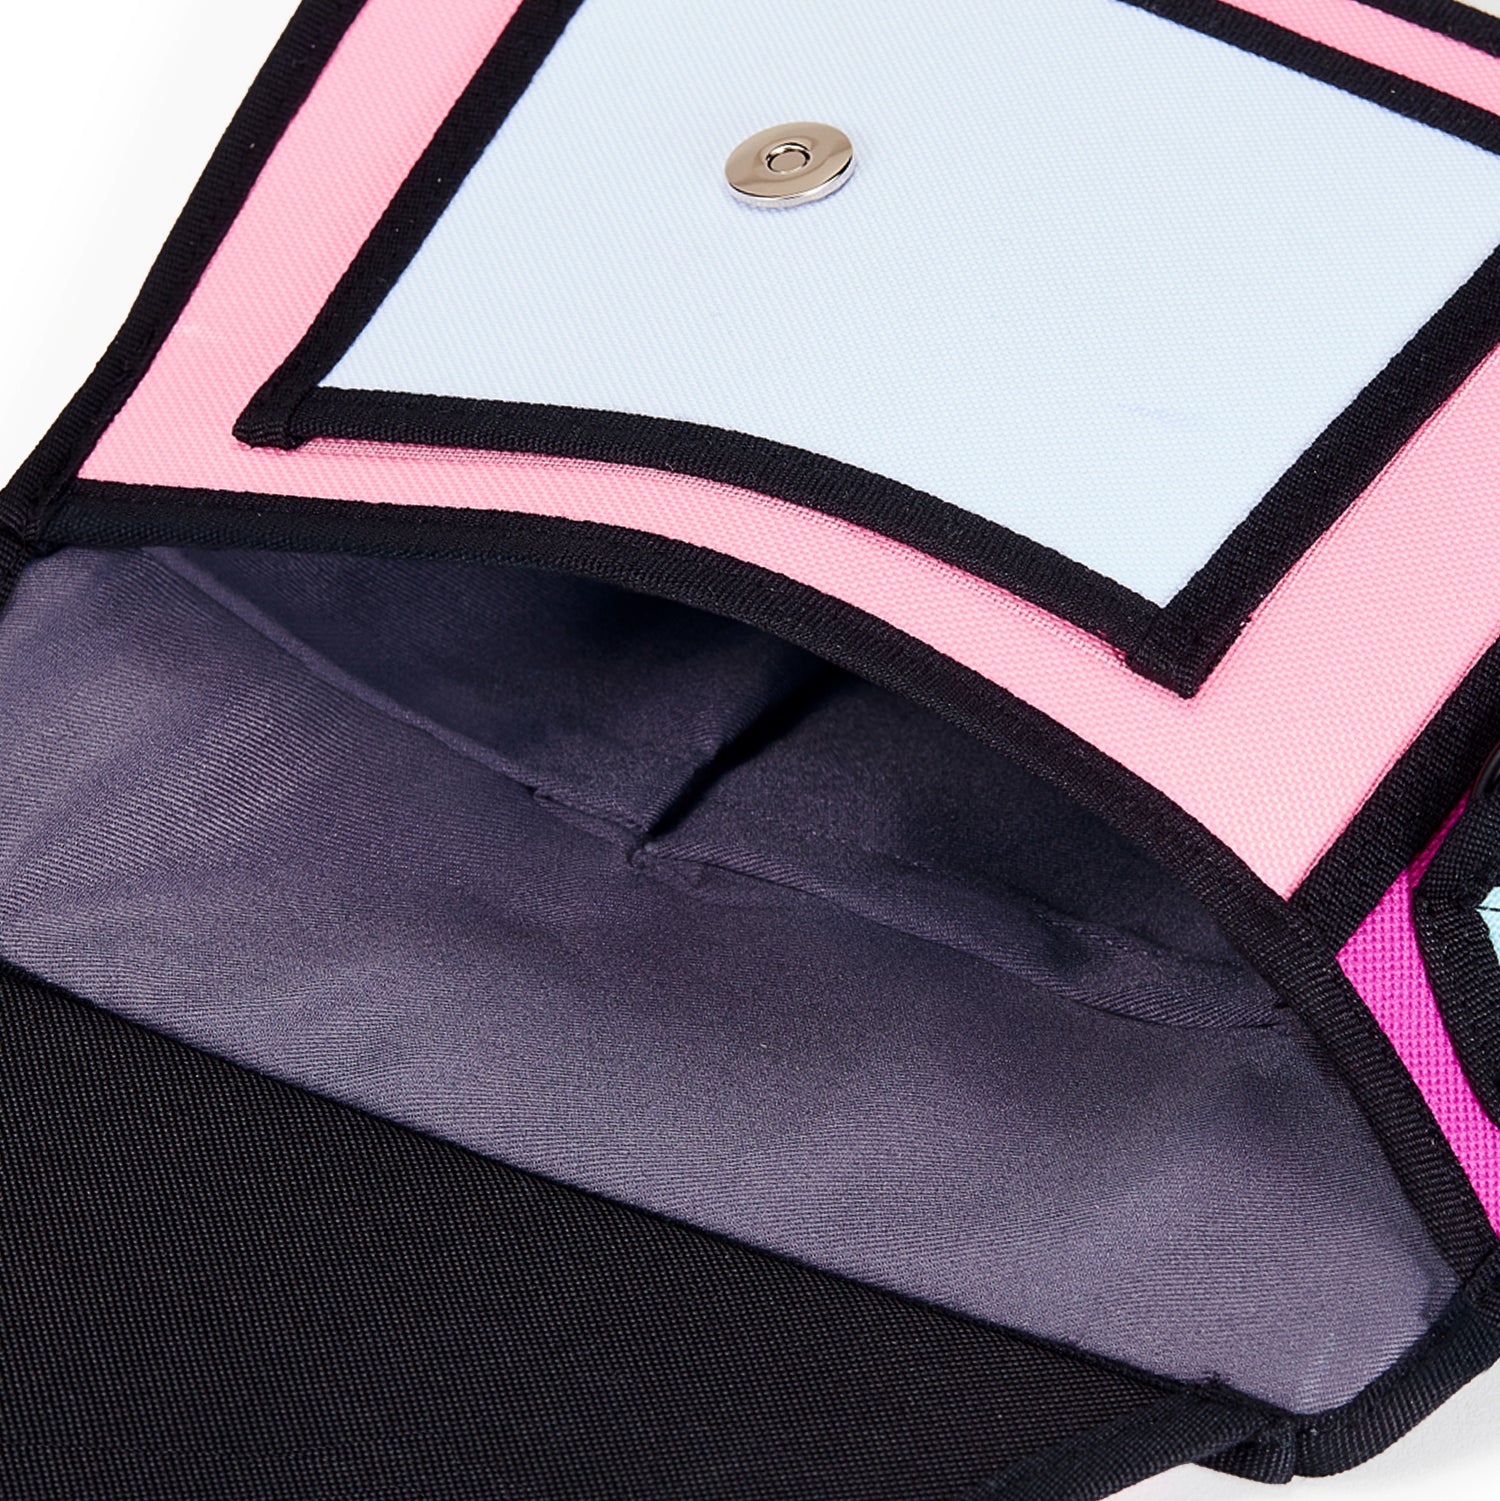 Neon Pink Giggle Shoulder Bag